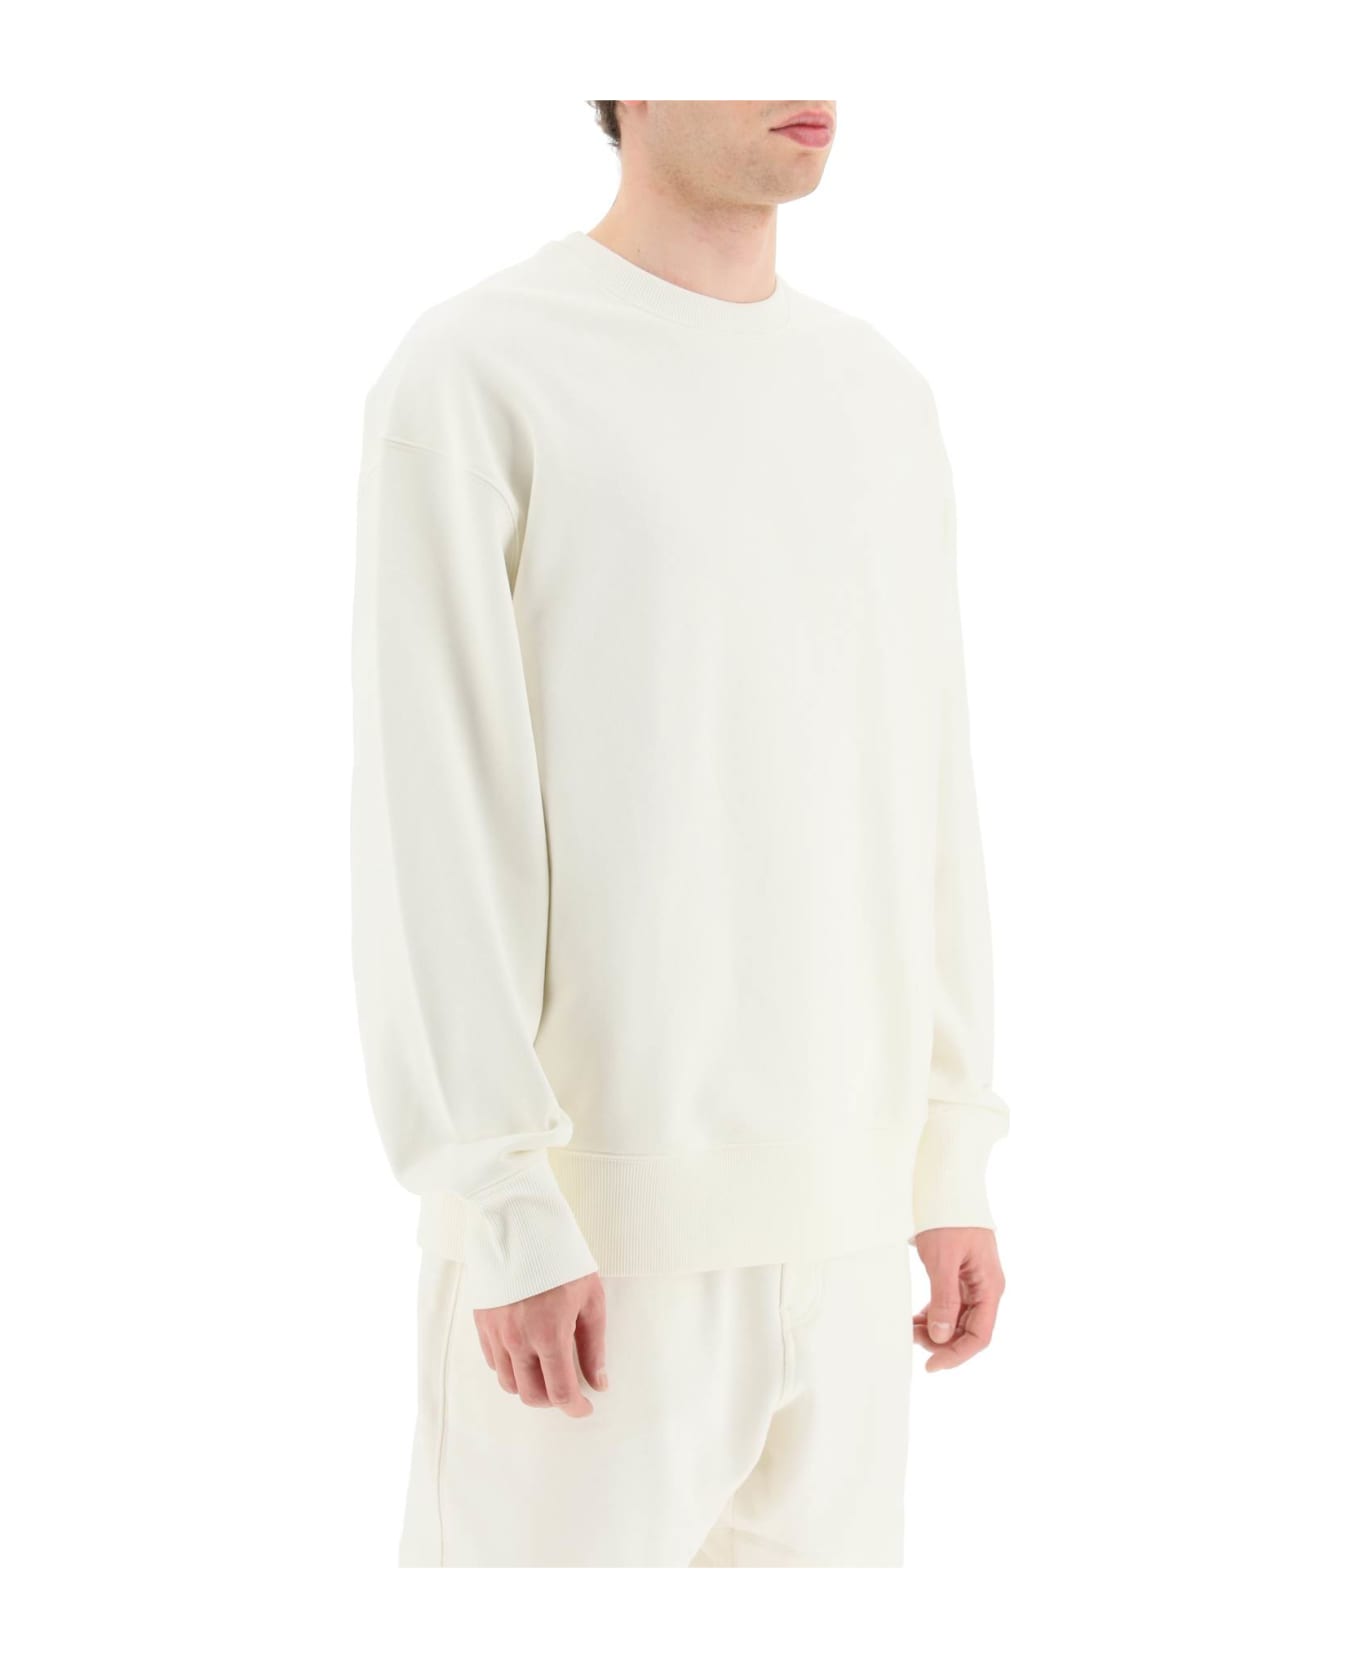 Y-3 Crew Sweatshirt In White Cotton - OFFWHITE